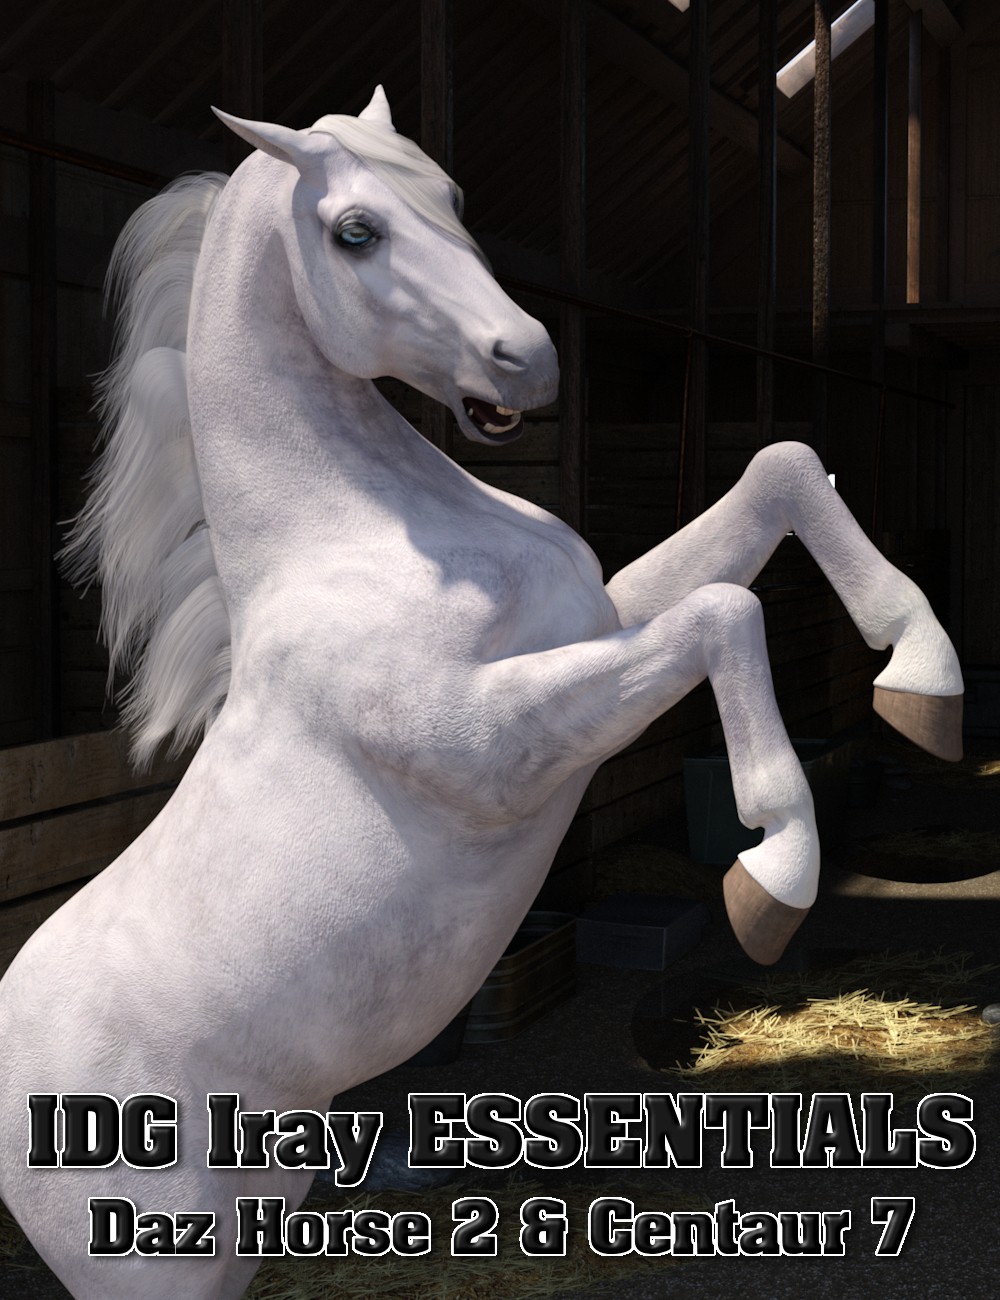 IDG Iray Essentials - Daz Horse 2 and Centaur 7